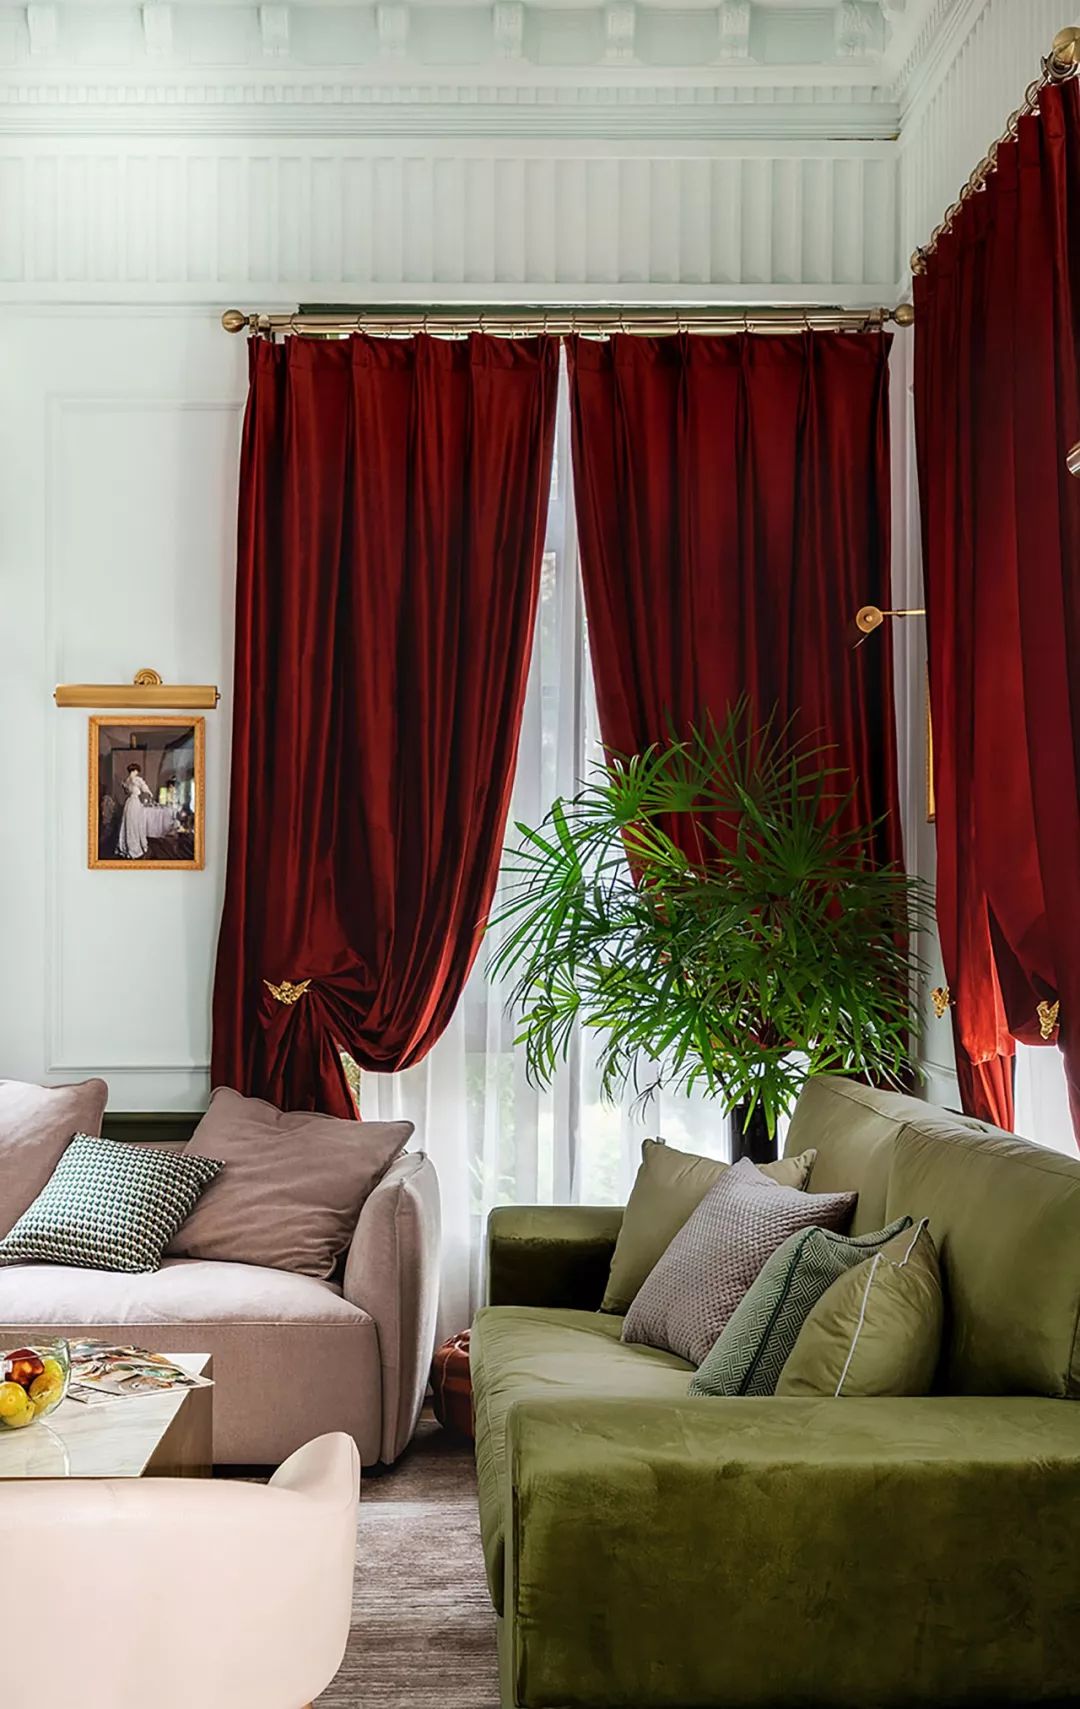 大面积的红丝绒窗帘是主色调,绿色沙发作为辅助色,窗帘上的小天使金色